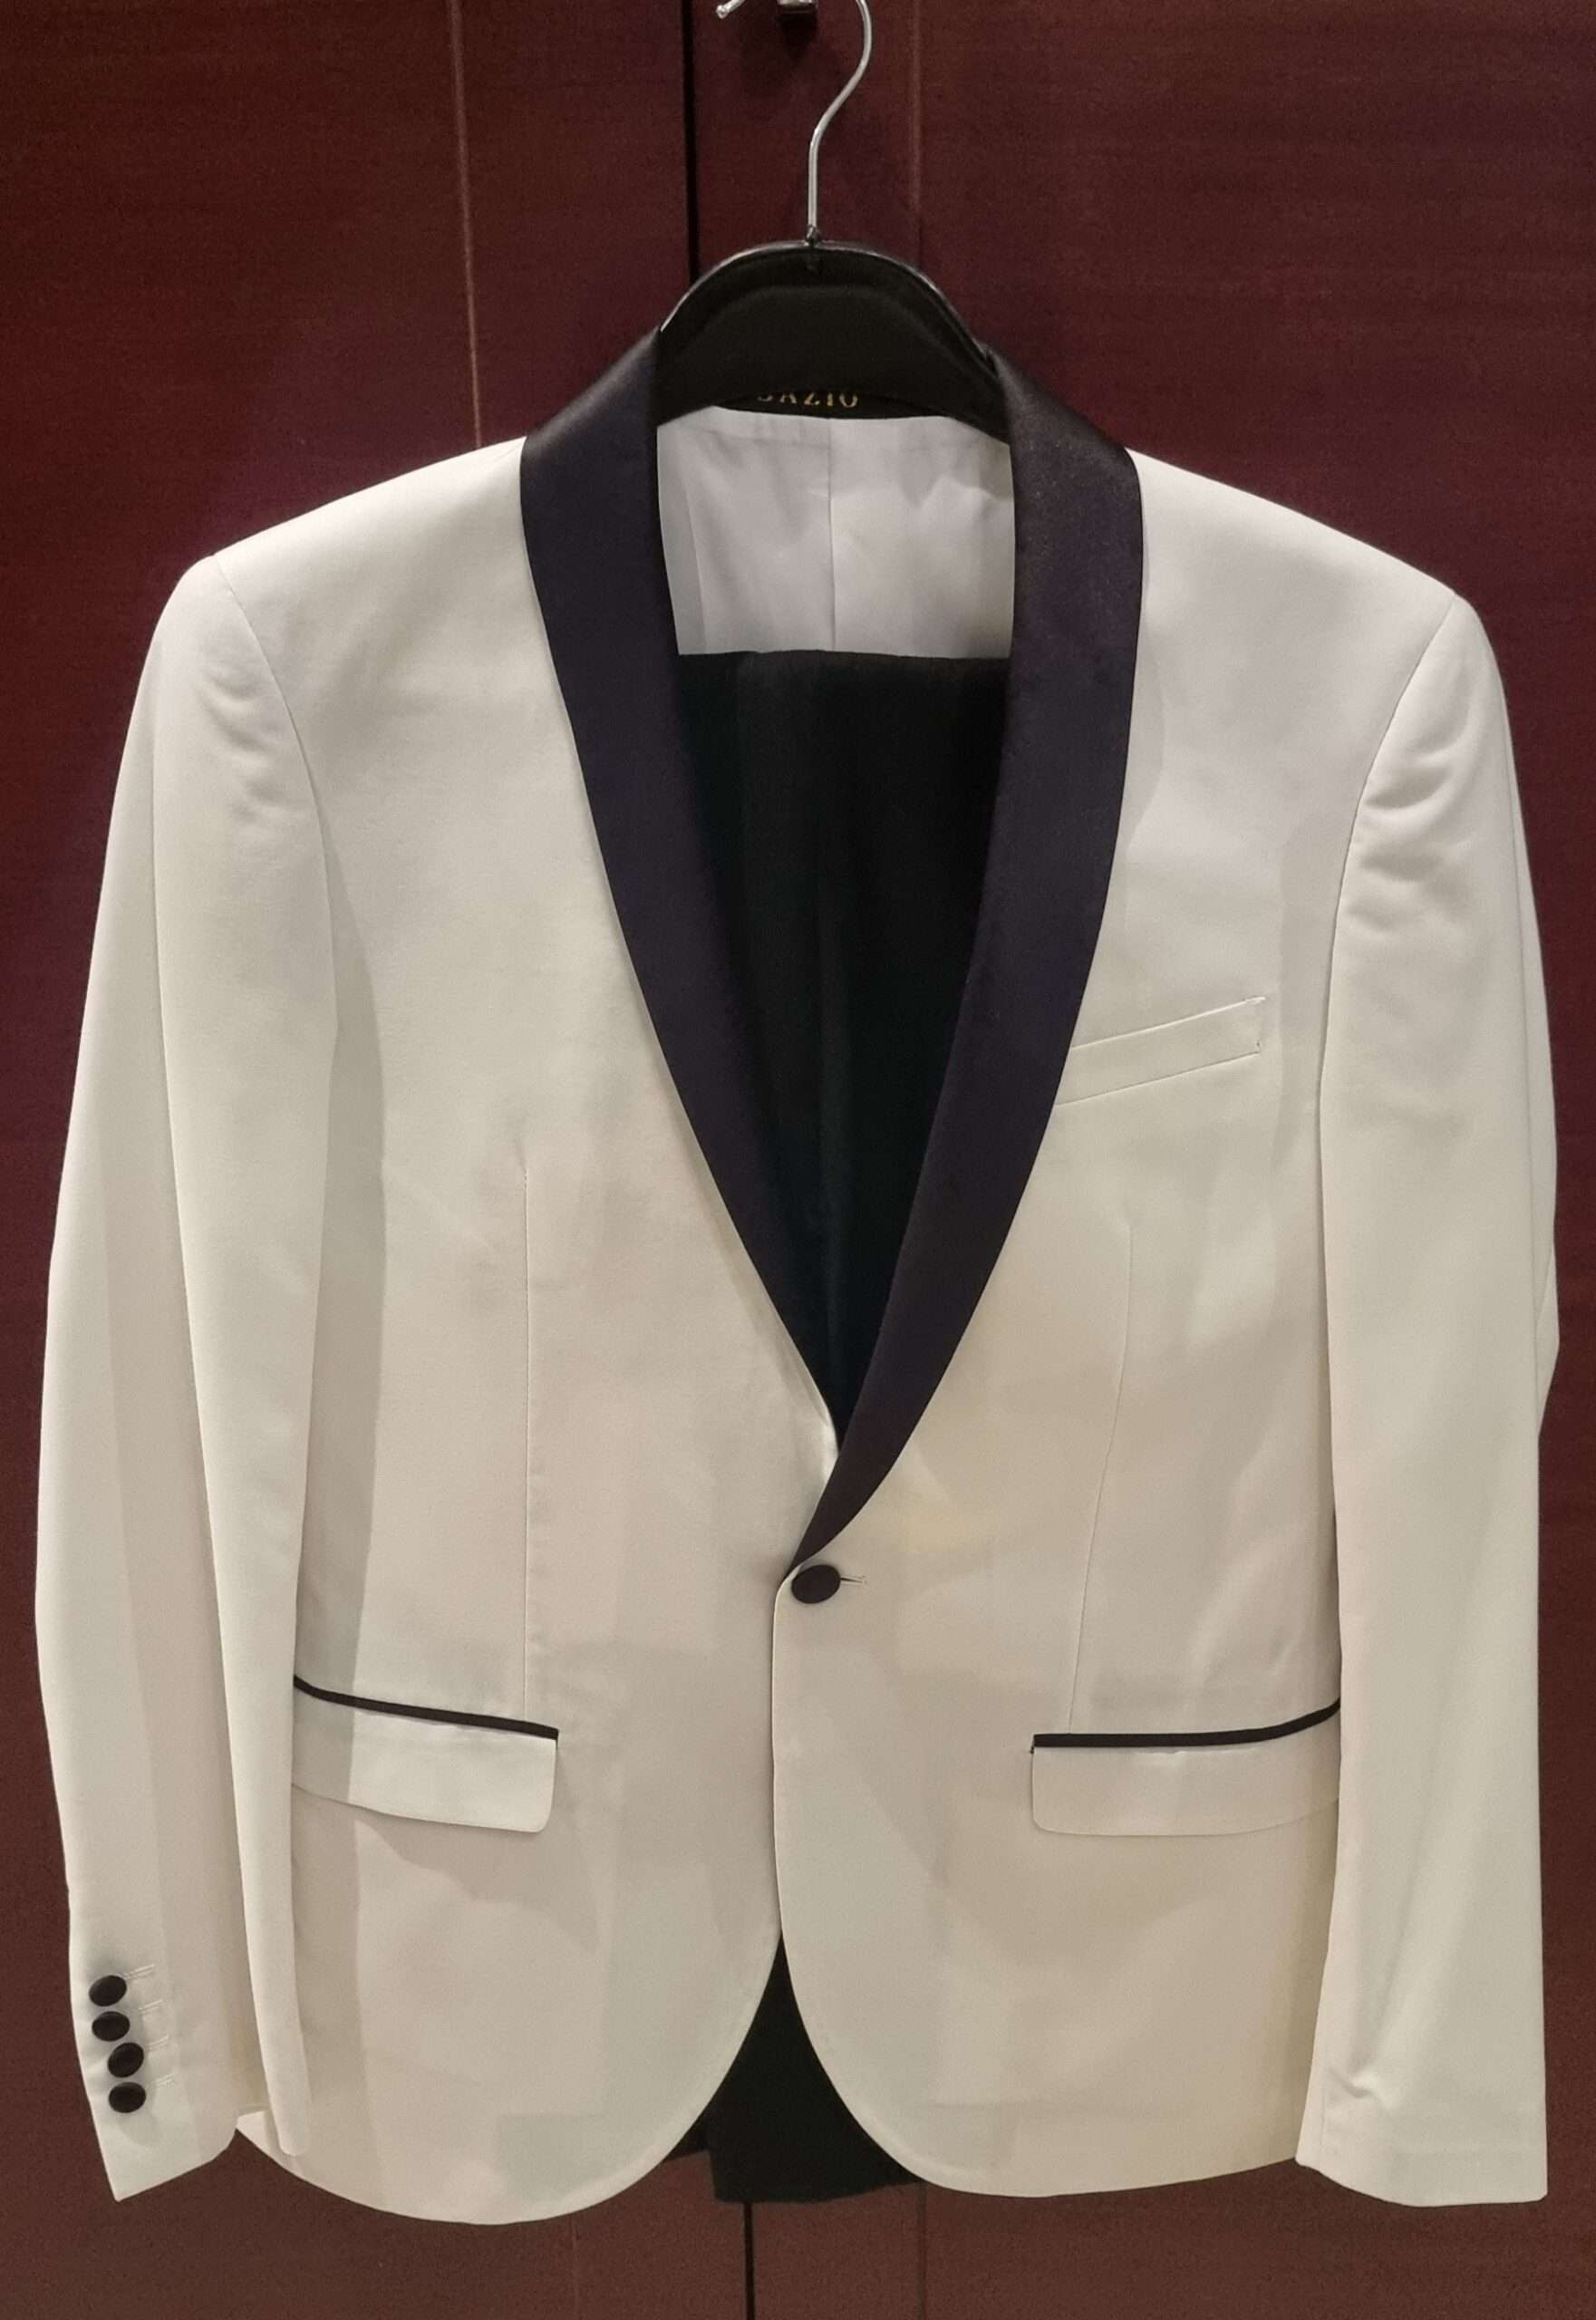 Sazio Men's Suit - White & Black Size 44 - Yearn Fashion